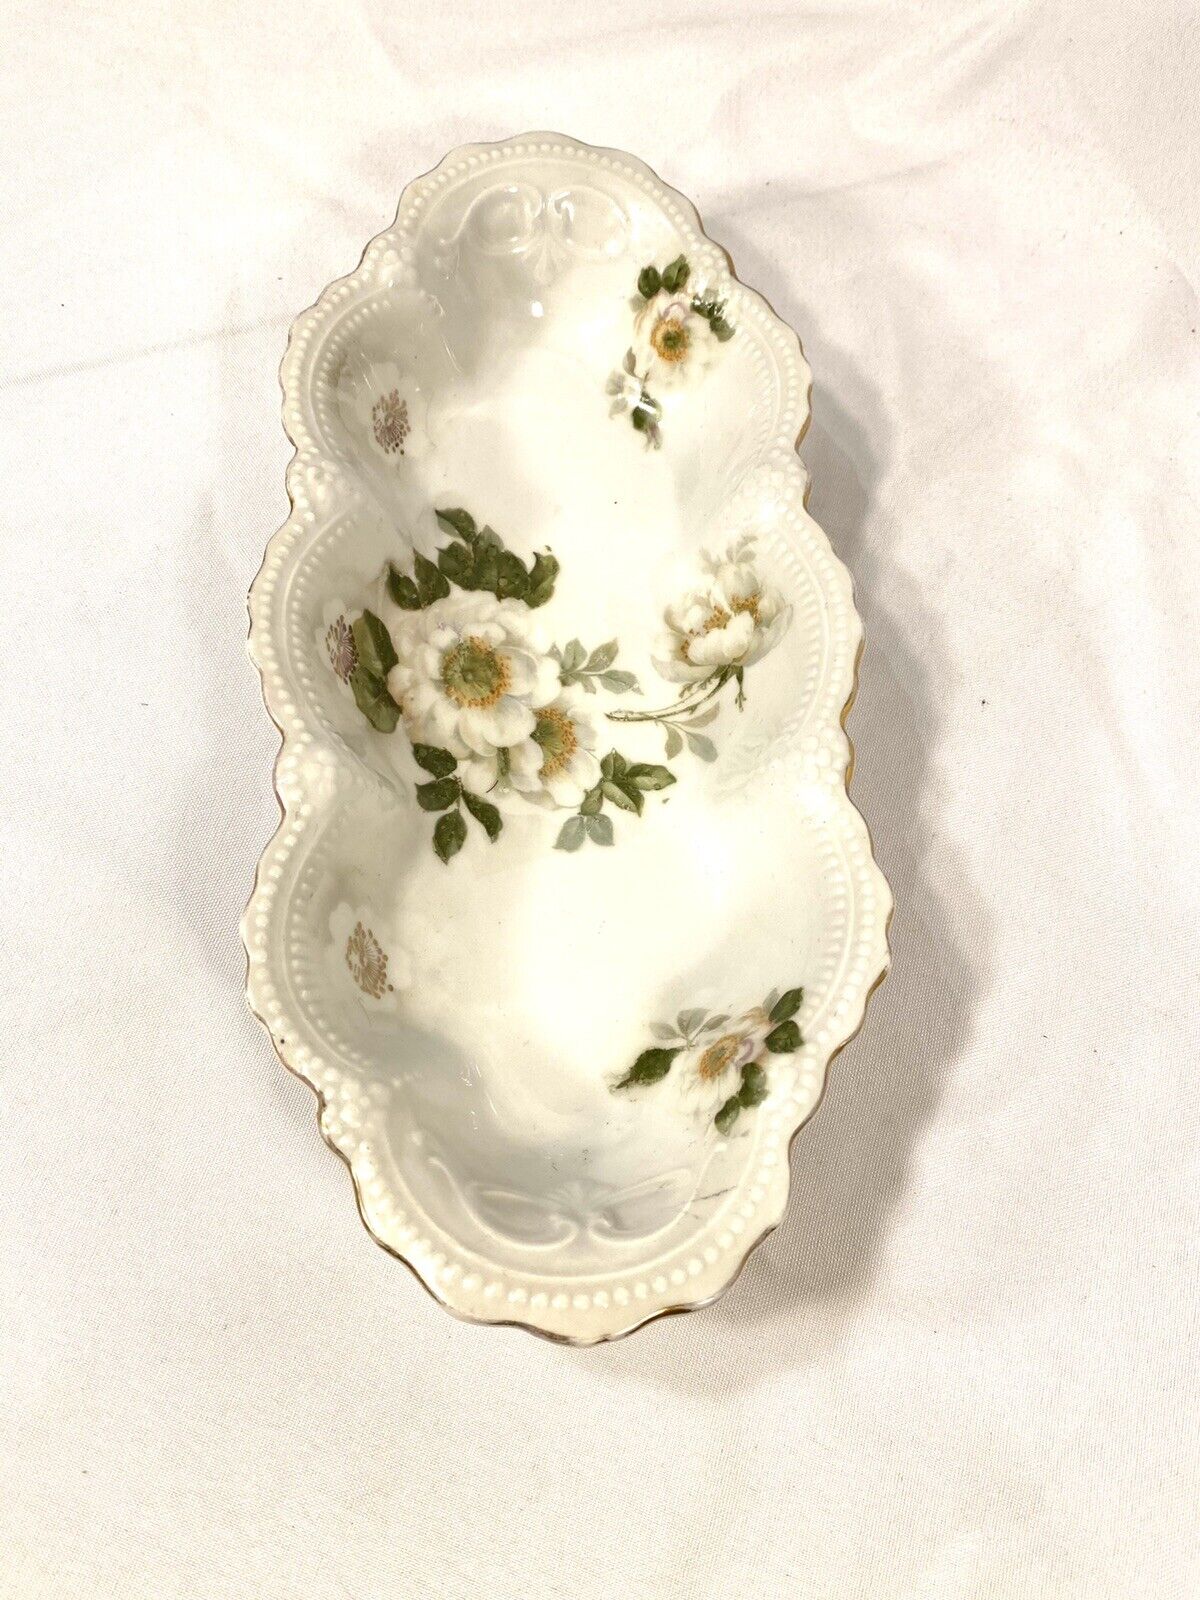 leuchtenburg germany vintage floral white serving bowl 